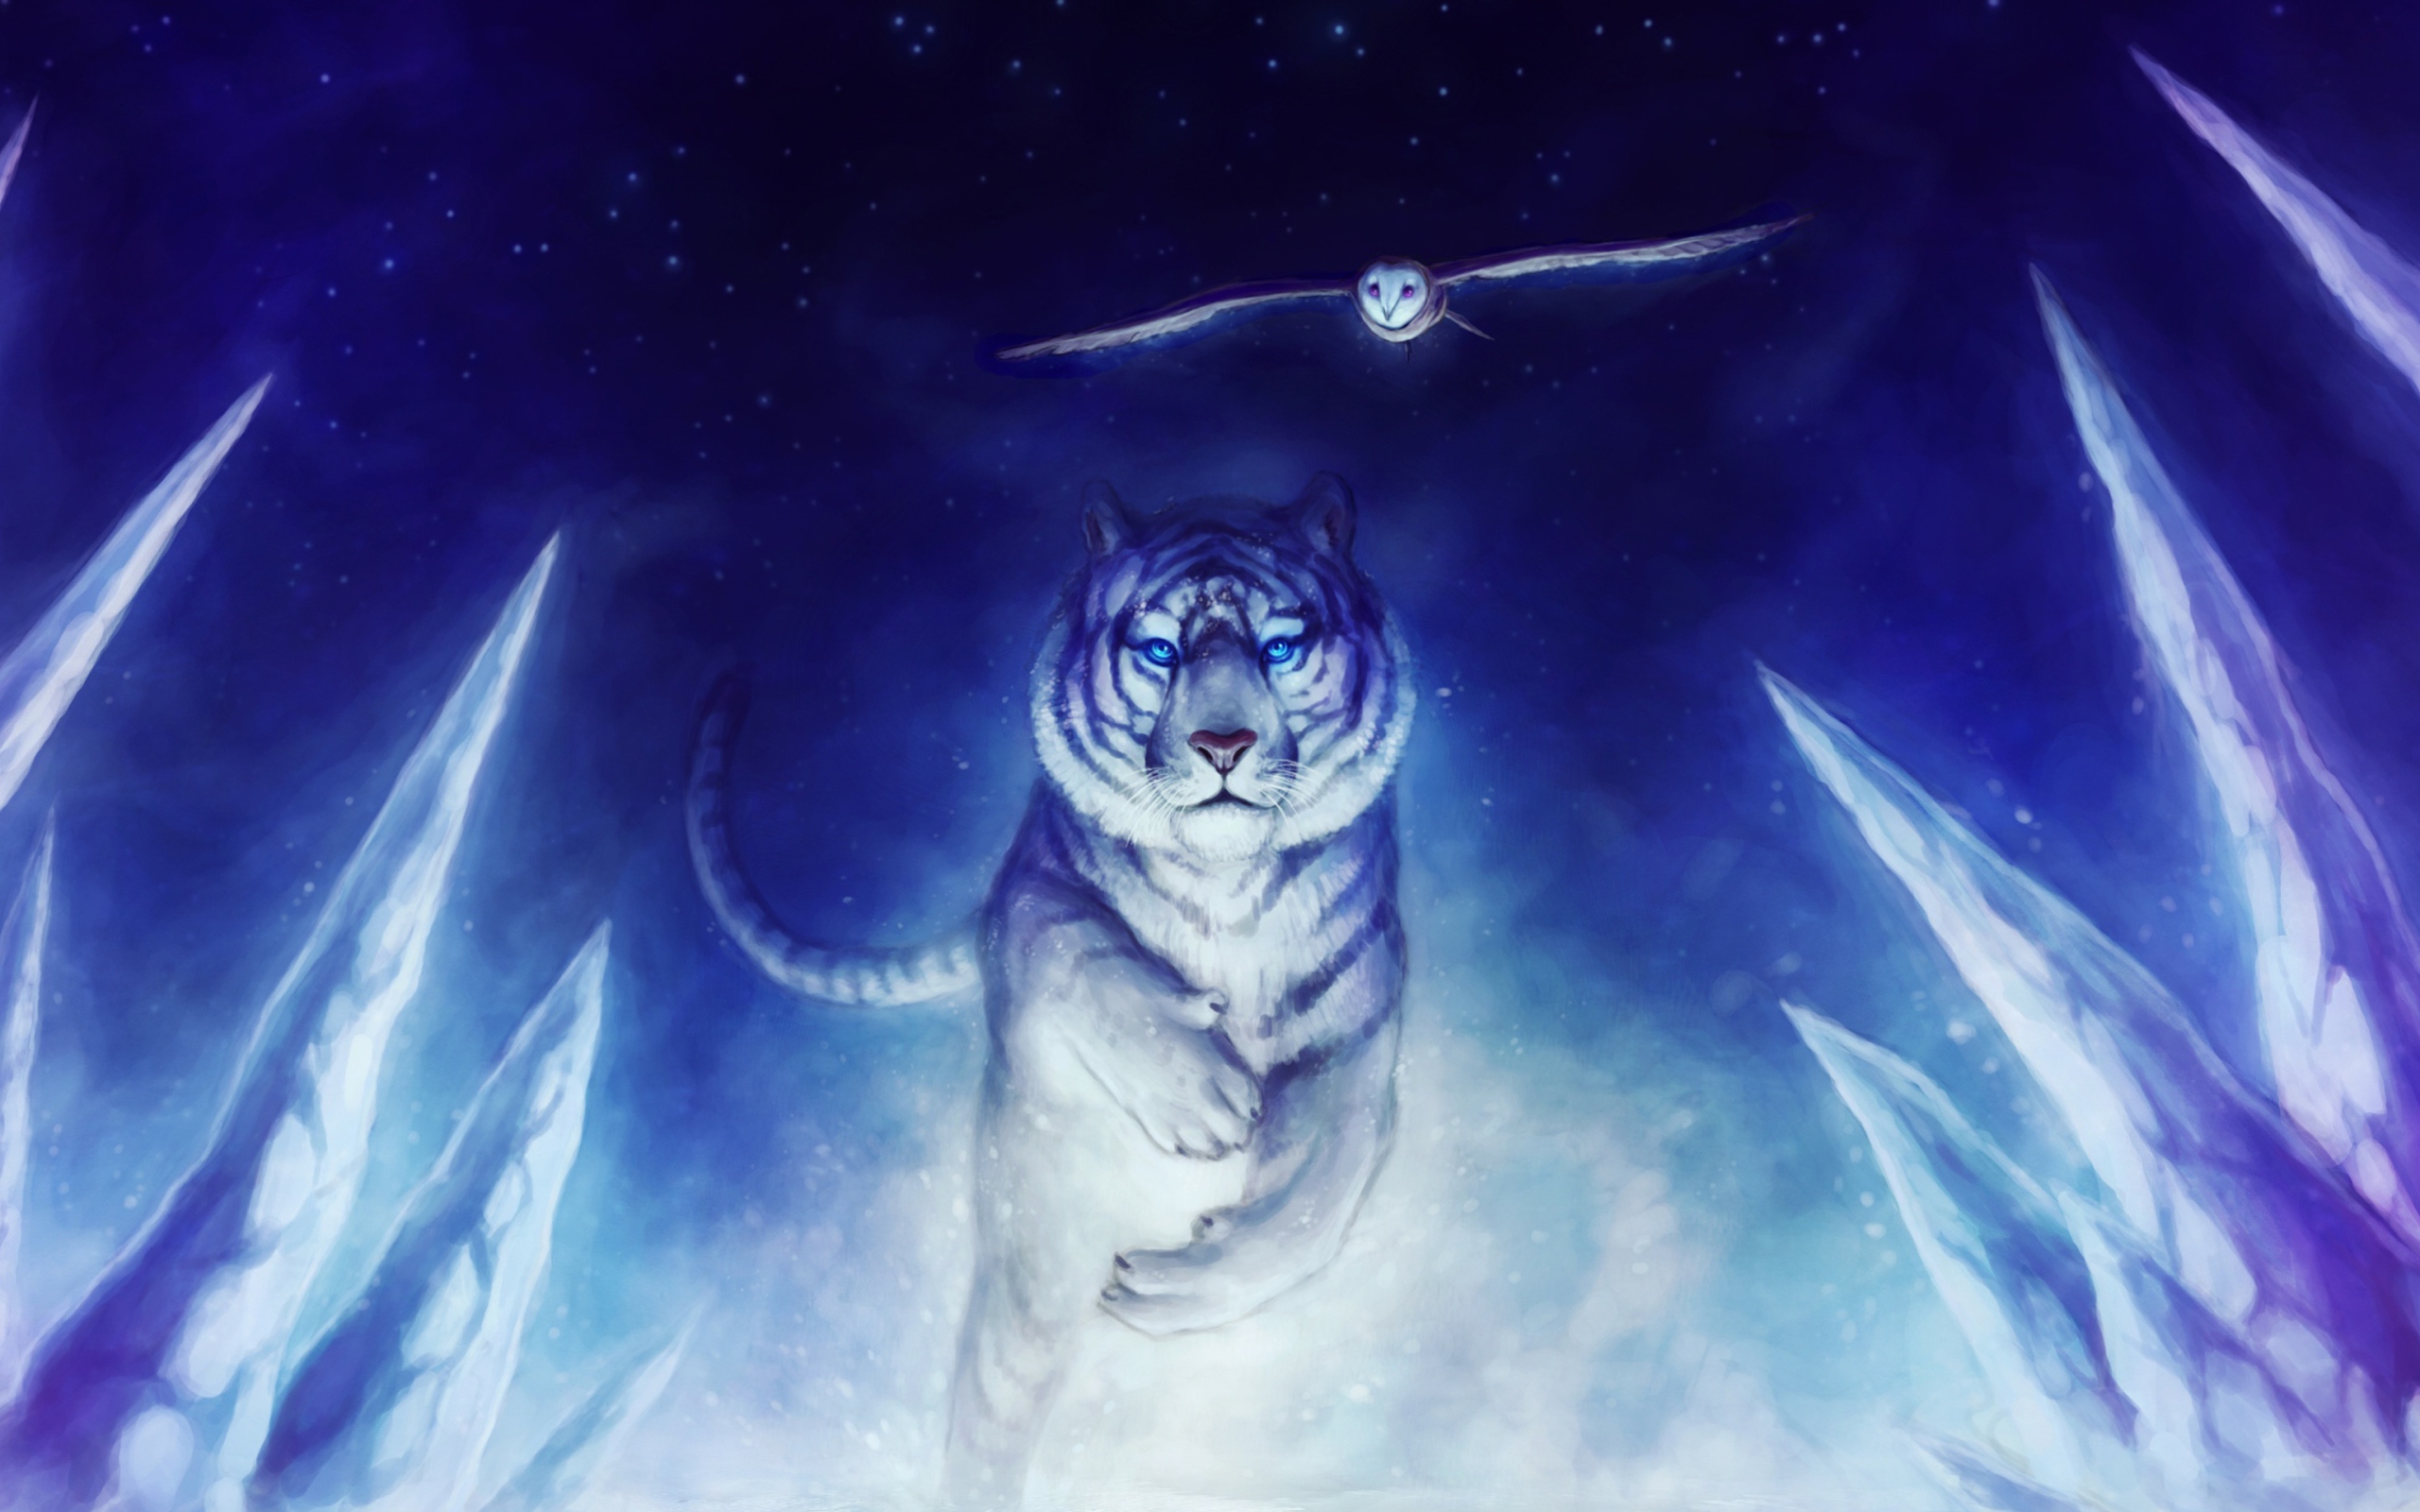 Sfondi Tiger & Owl Art 2560x1600